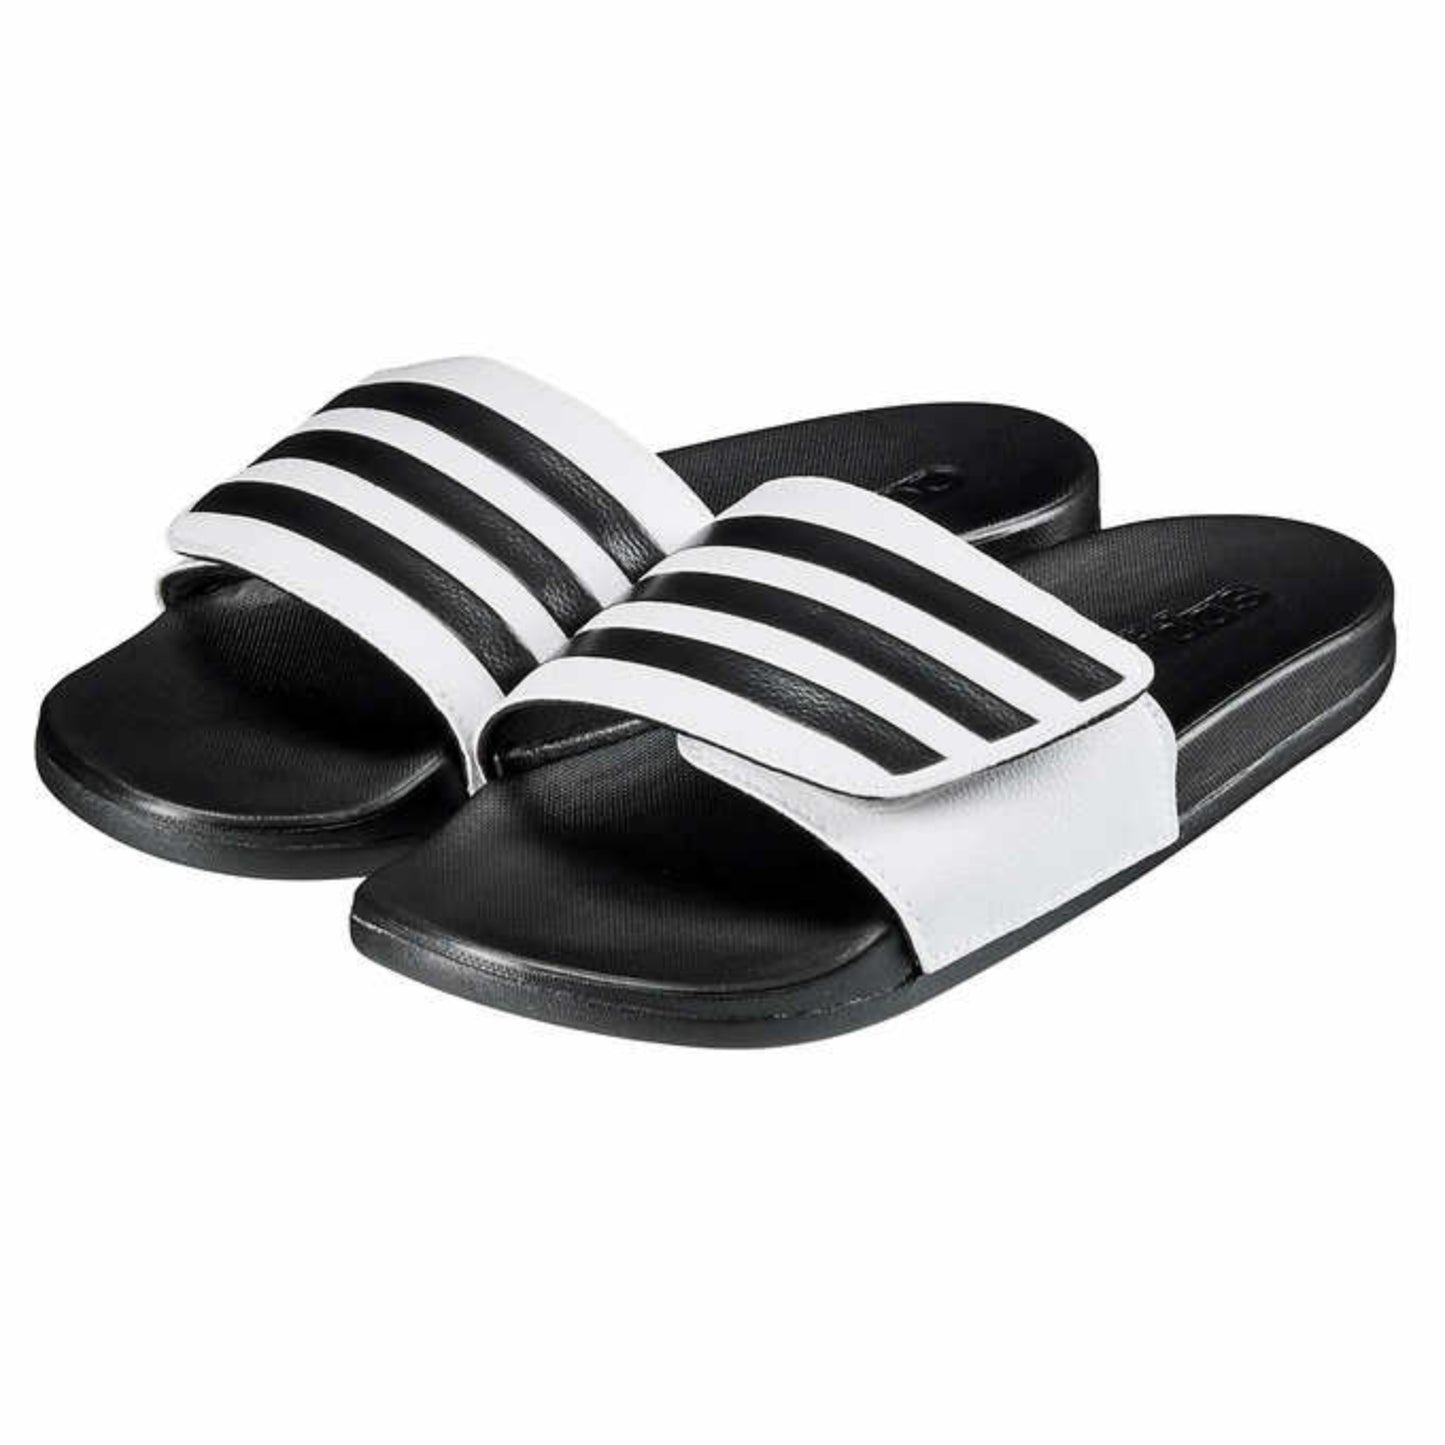 Adidas Men / Unisex Cloudfoam Three Stripes Adjustable Comfort Slide Sandal